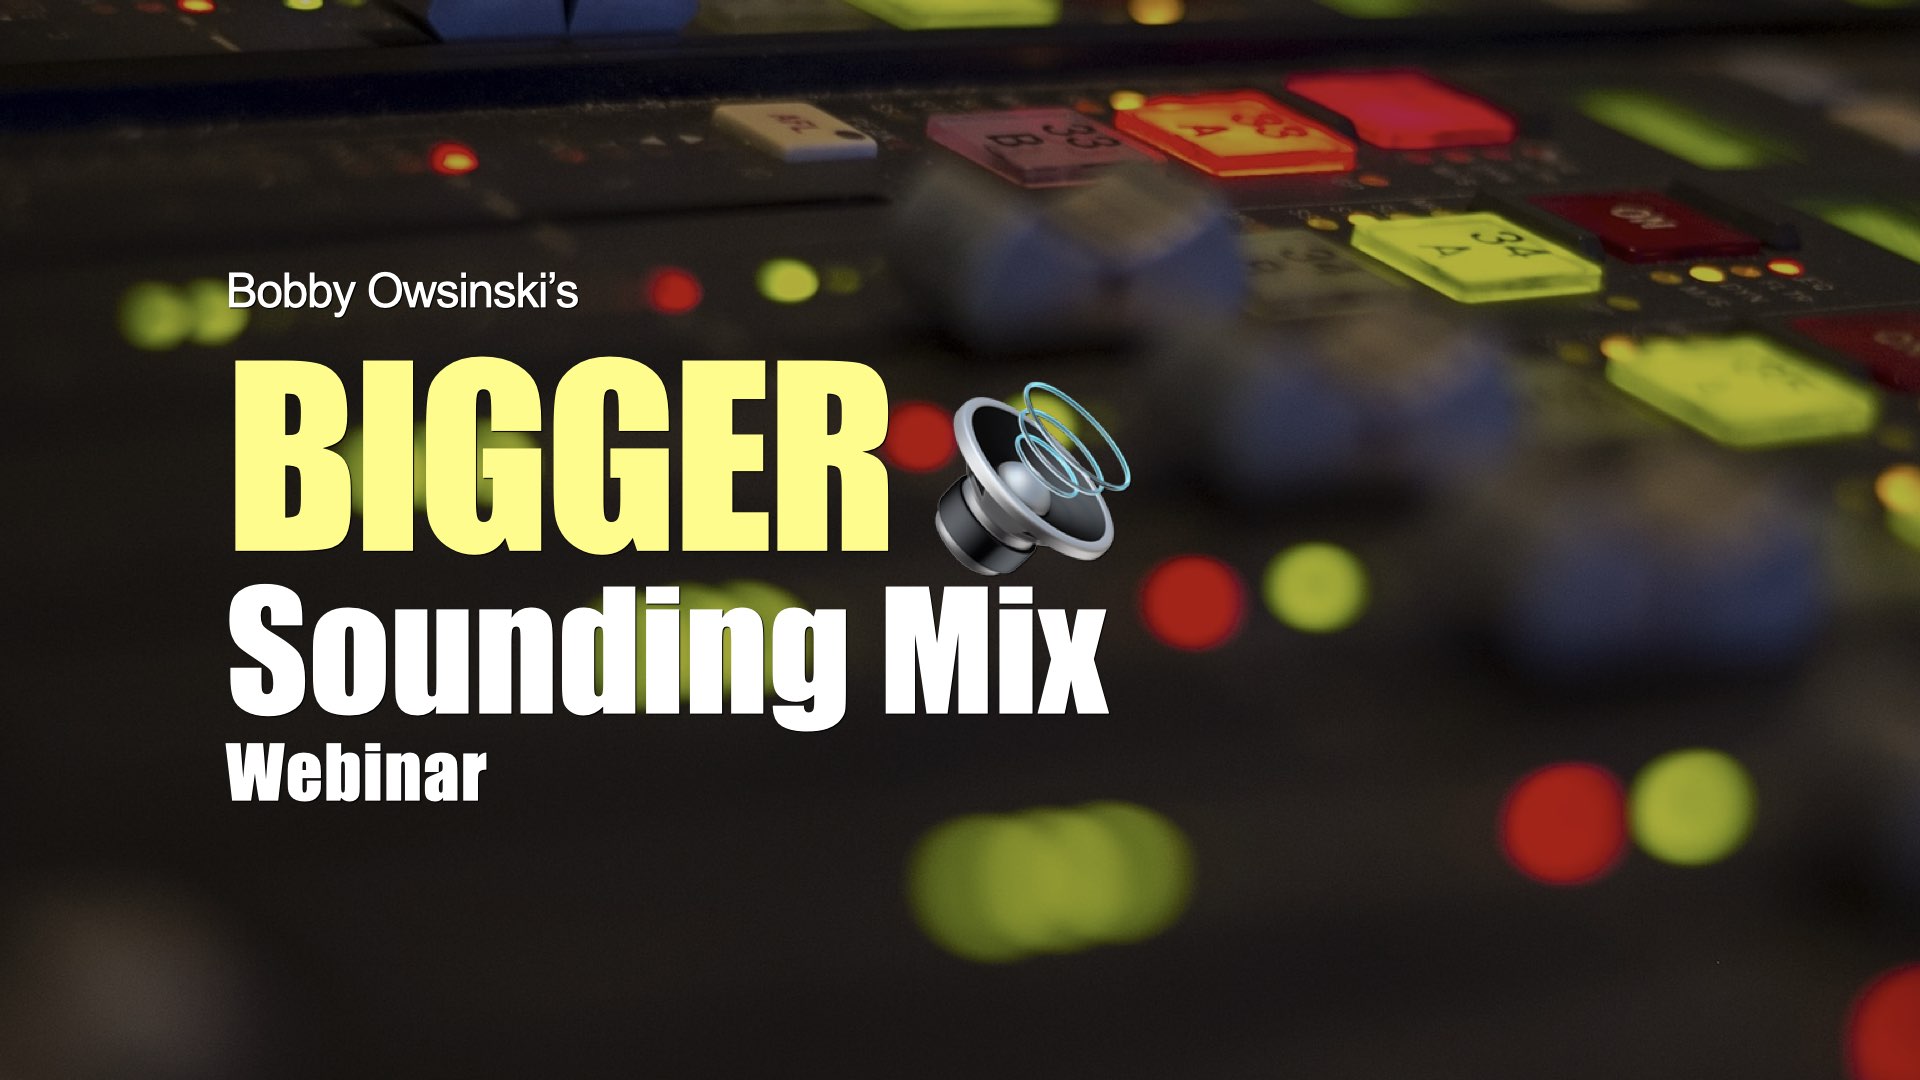 Bigger Sounding Mix webinar registration image